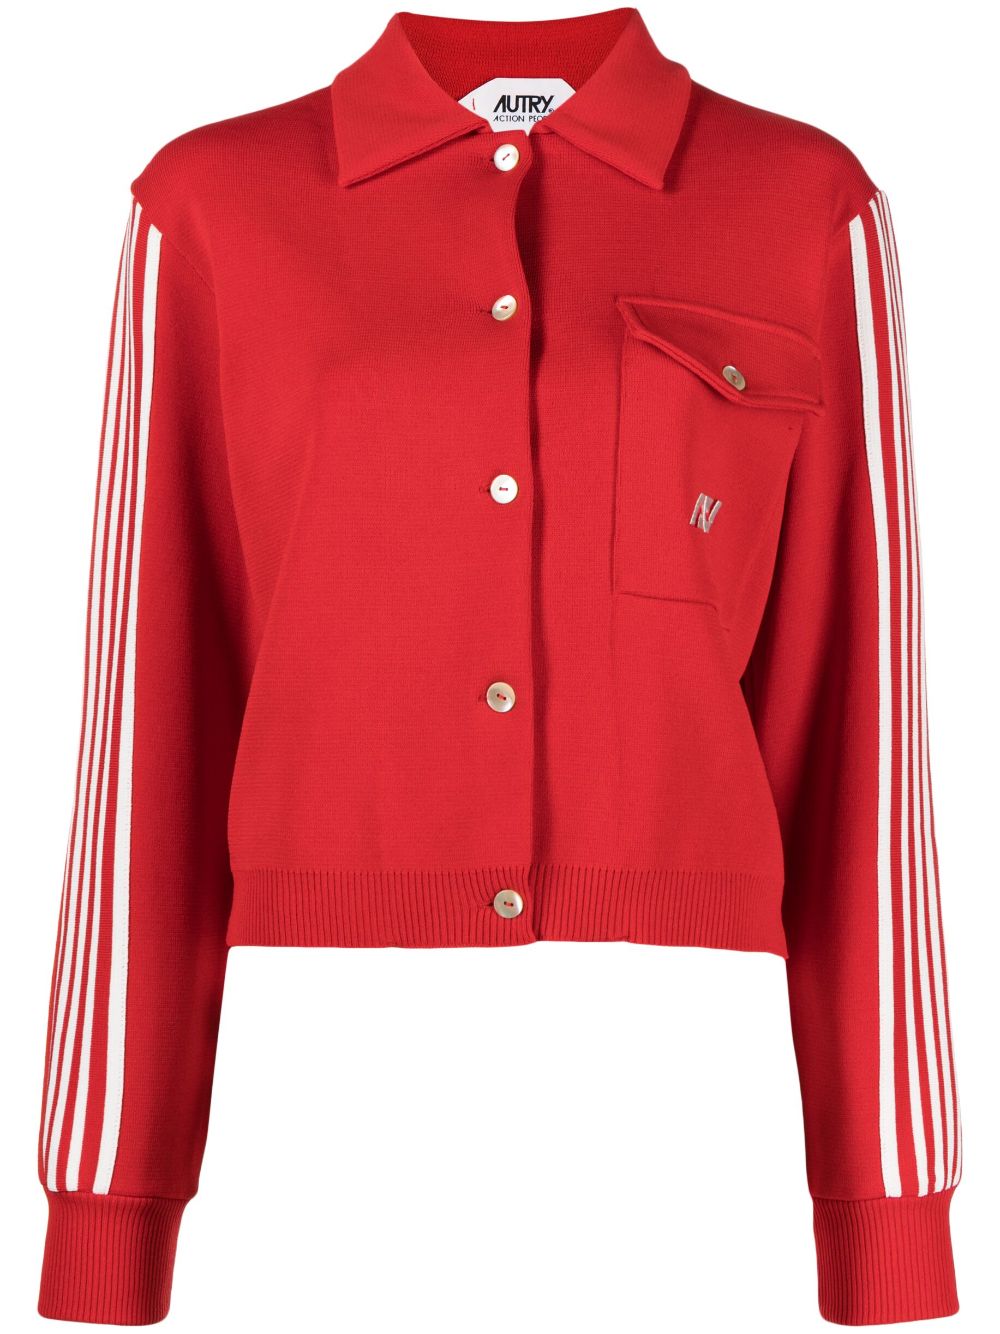 Autry chest-pocket striped cardigan - Red von Autry